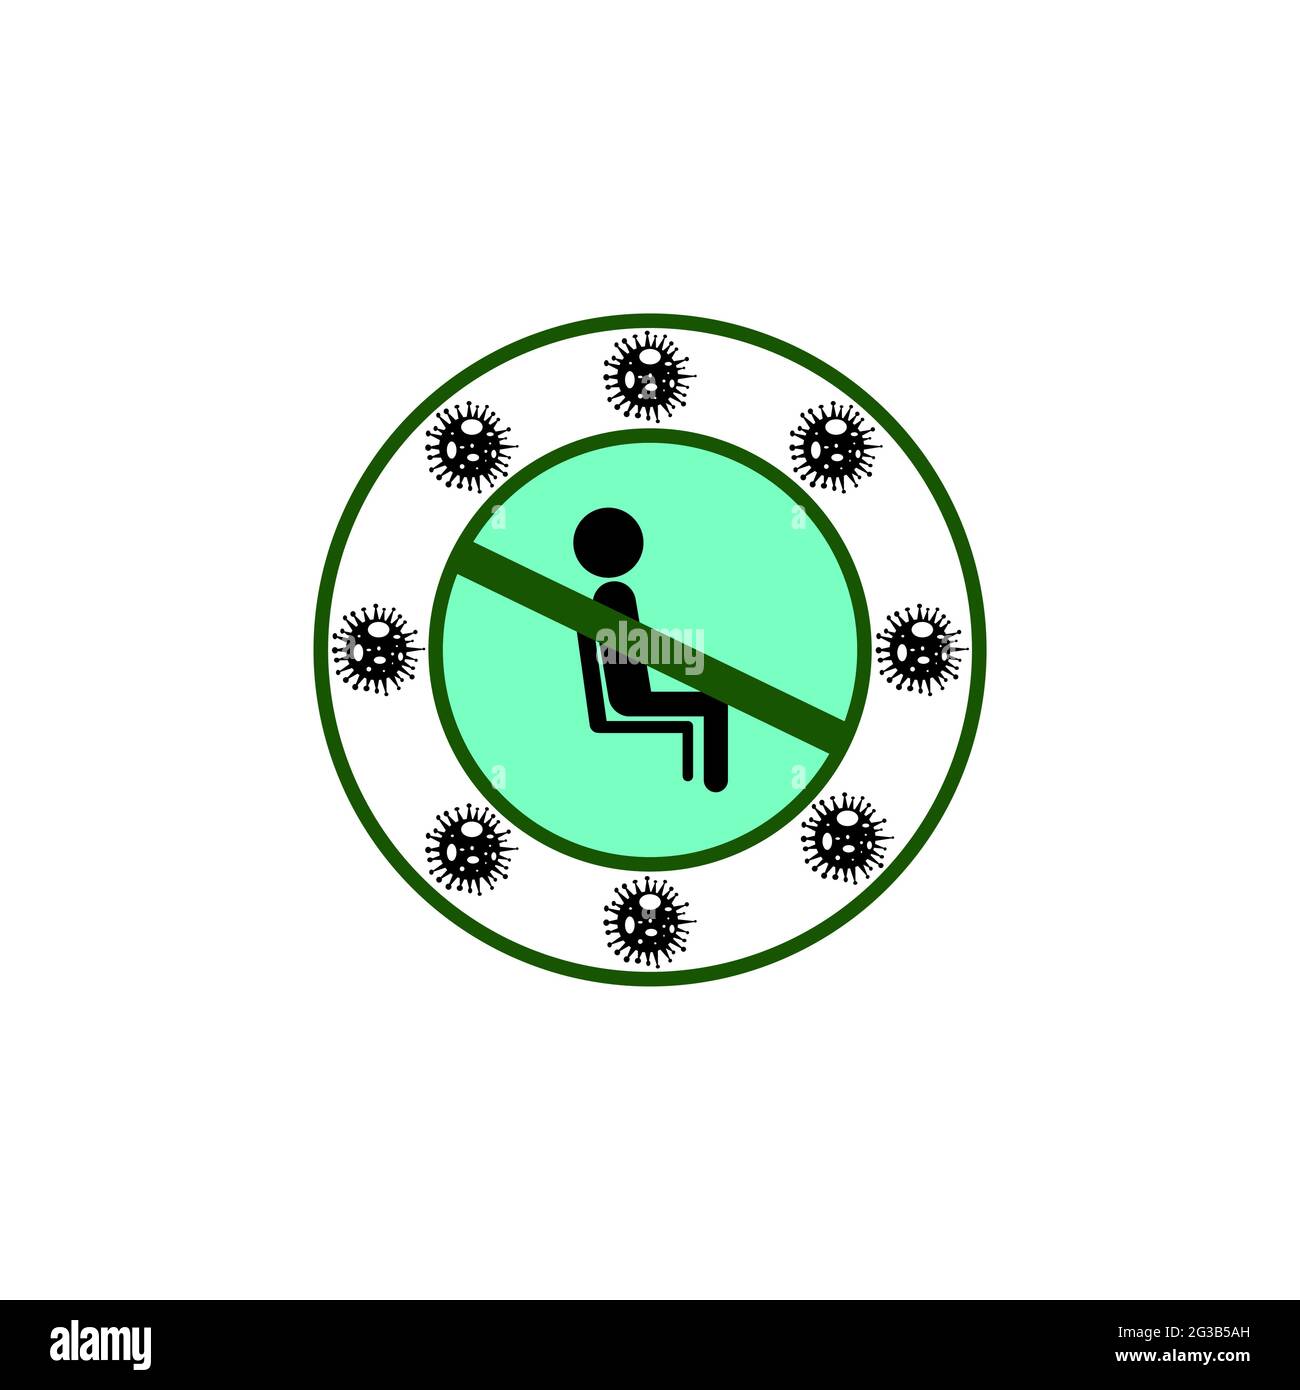 Non sedersi qui corona virus avvertimento. Illustrazione Vettoriale